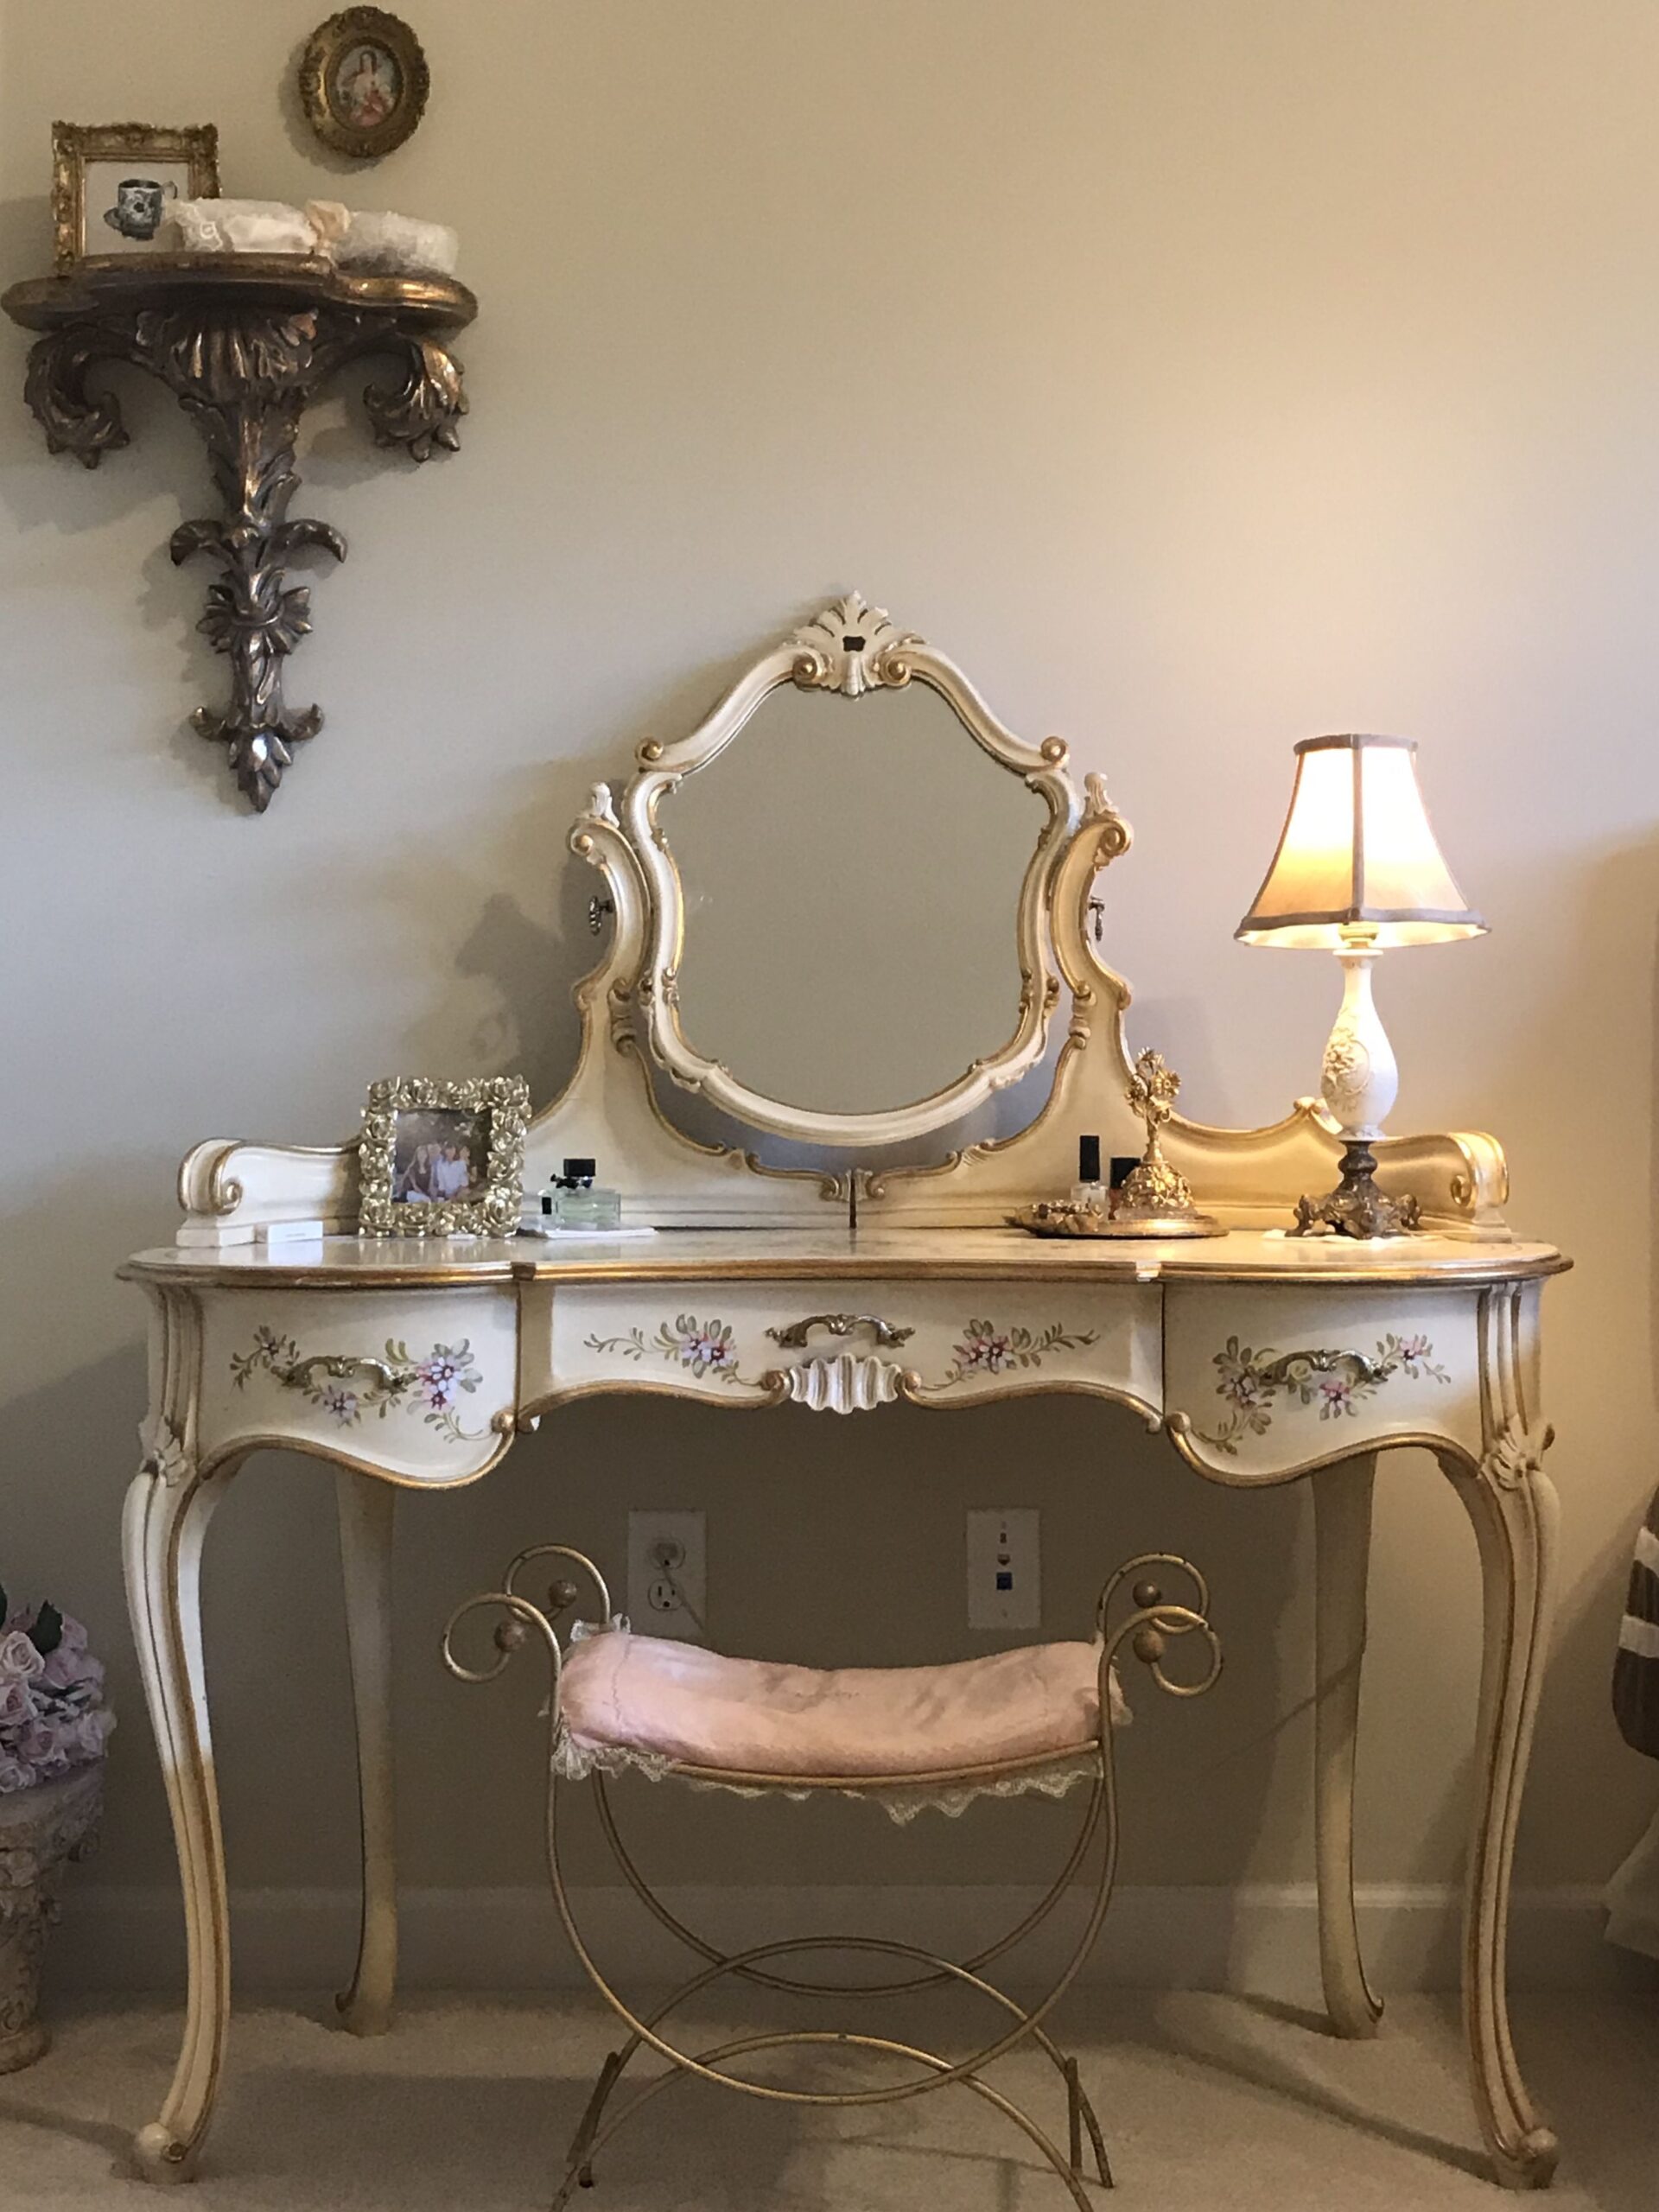 Antique Bedroom Vanity